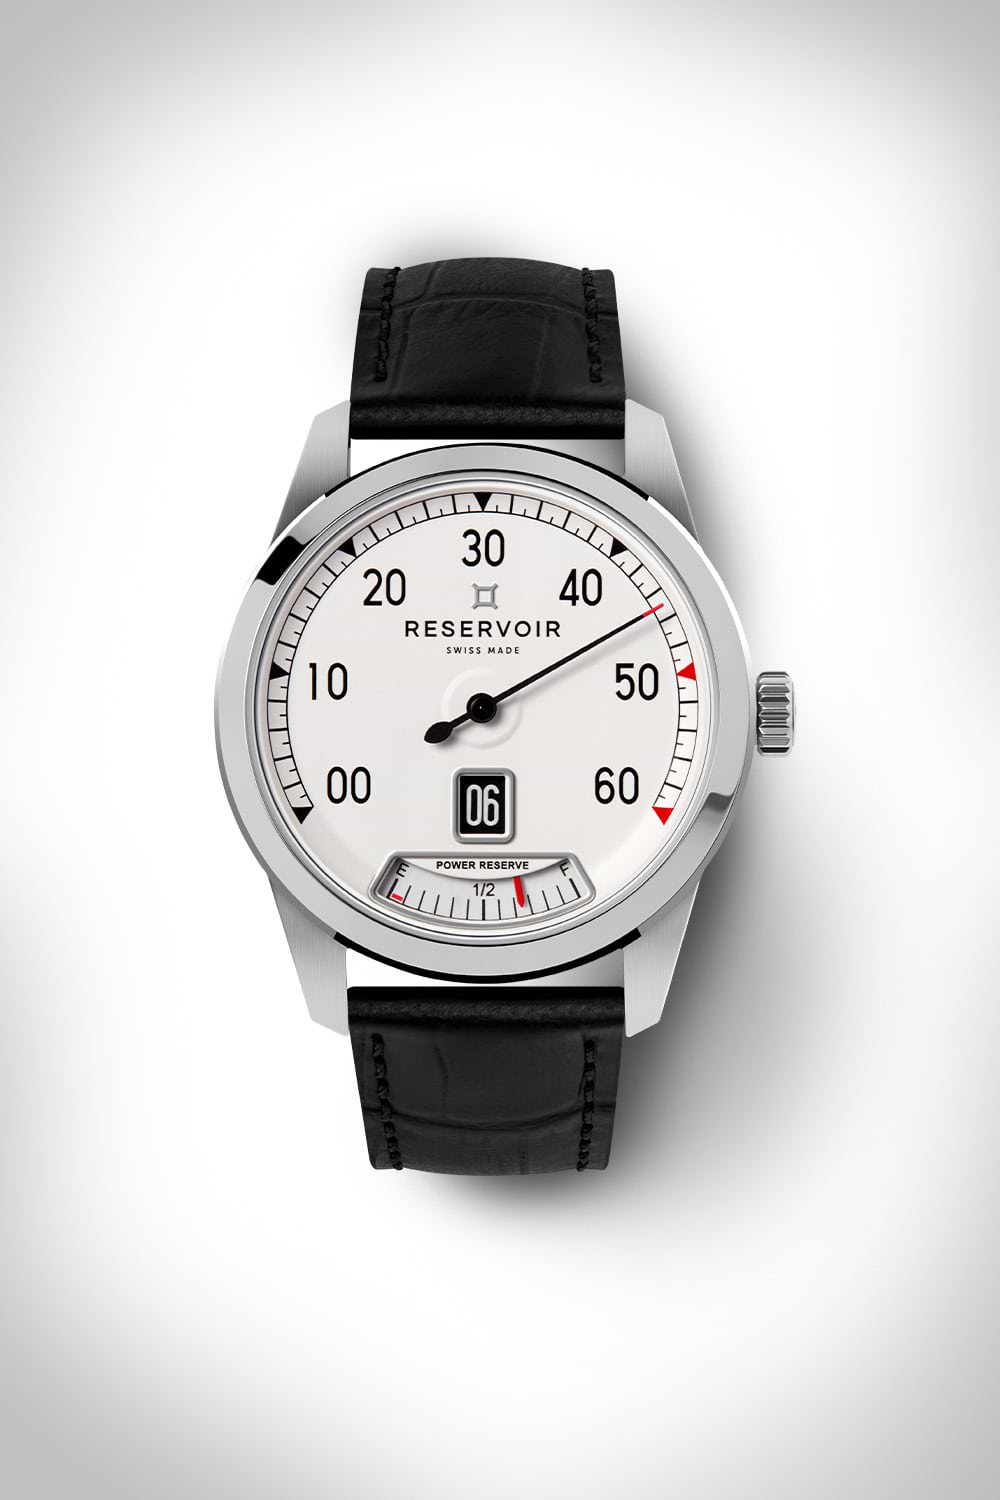 エレガントな腕時計、ホワイトダイアル、インデックス、日付表示、パワーリザーブインジケーター、ブラックストラップ。